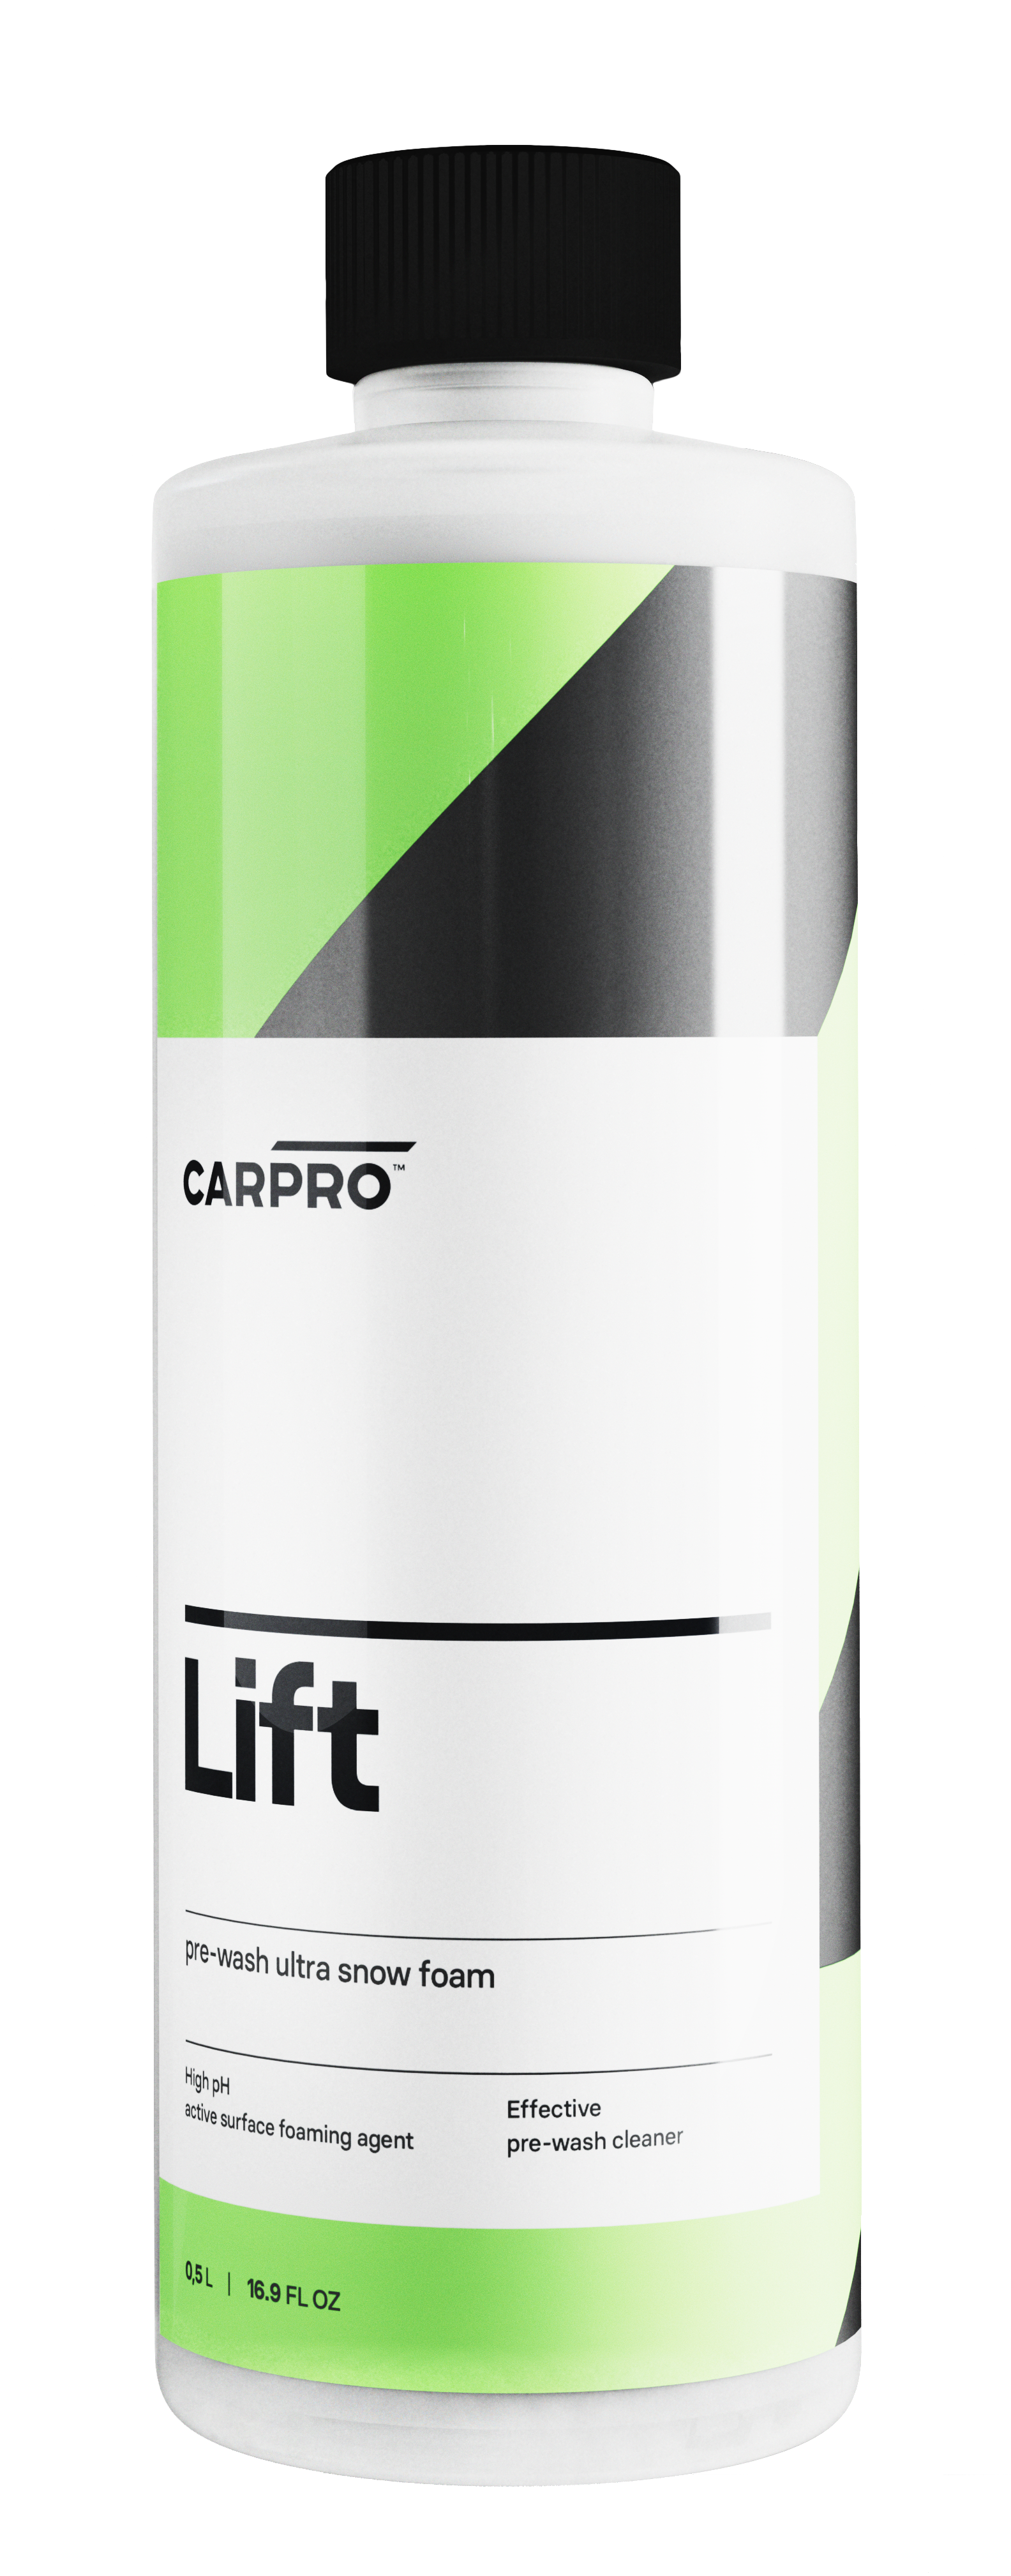 CARPRO - Lift 500ml (Savon de pré-lavage à pH alkalin)